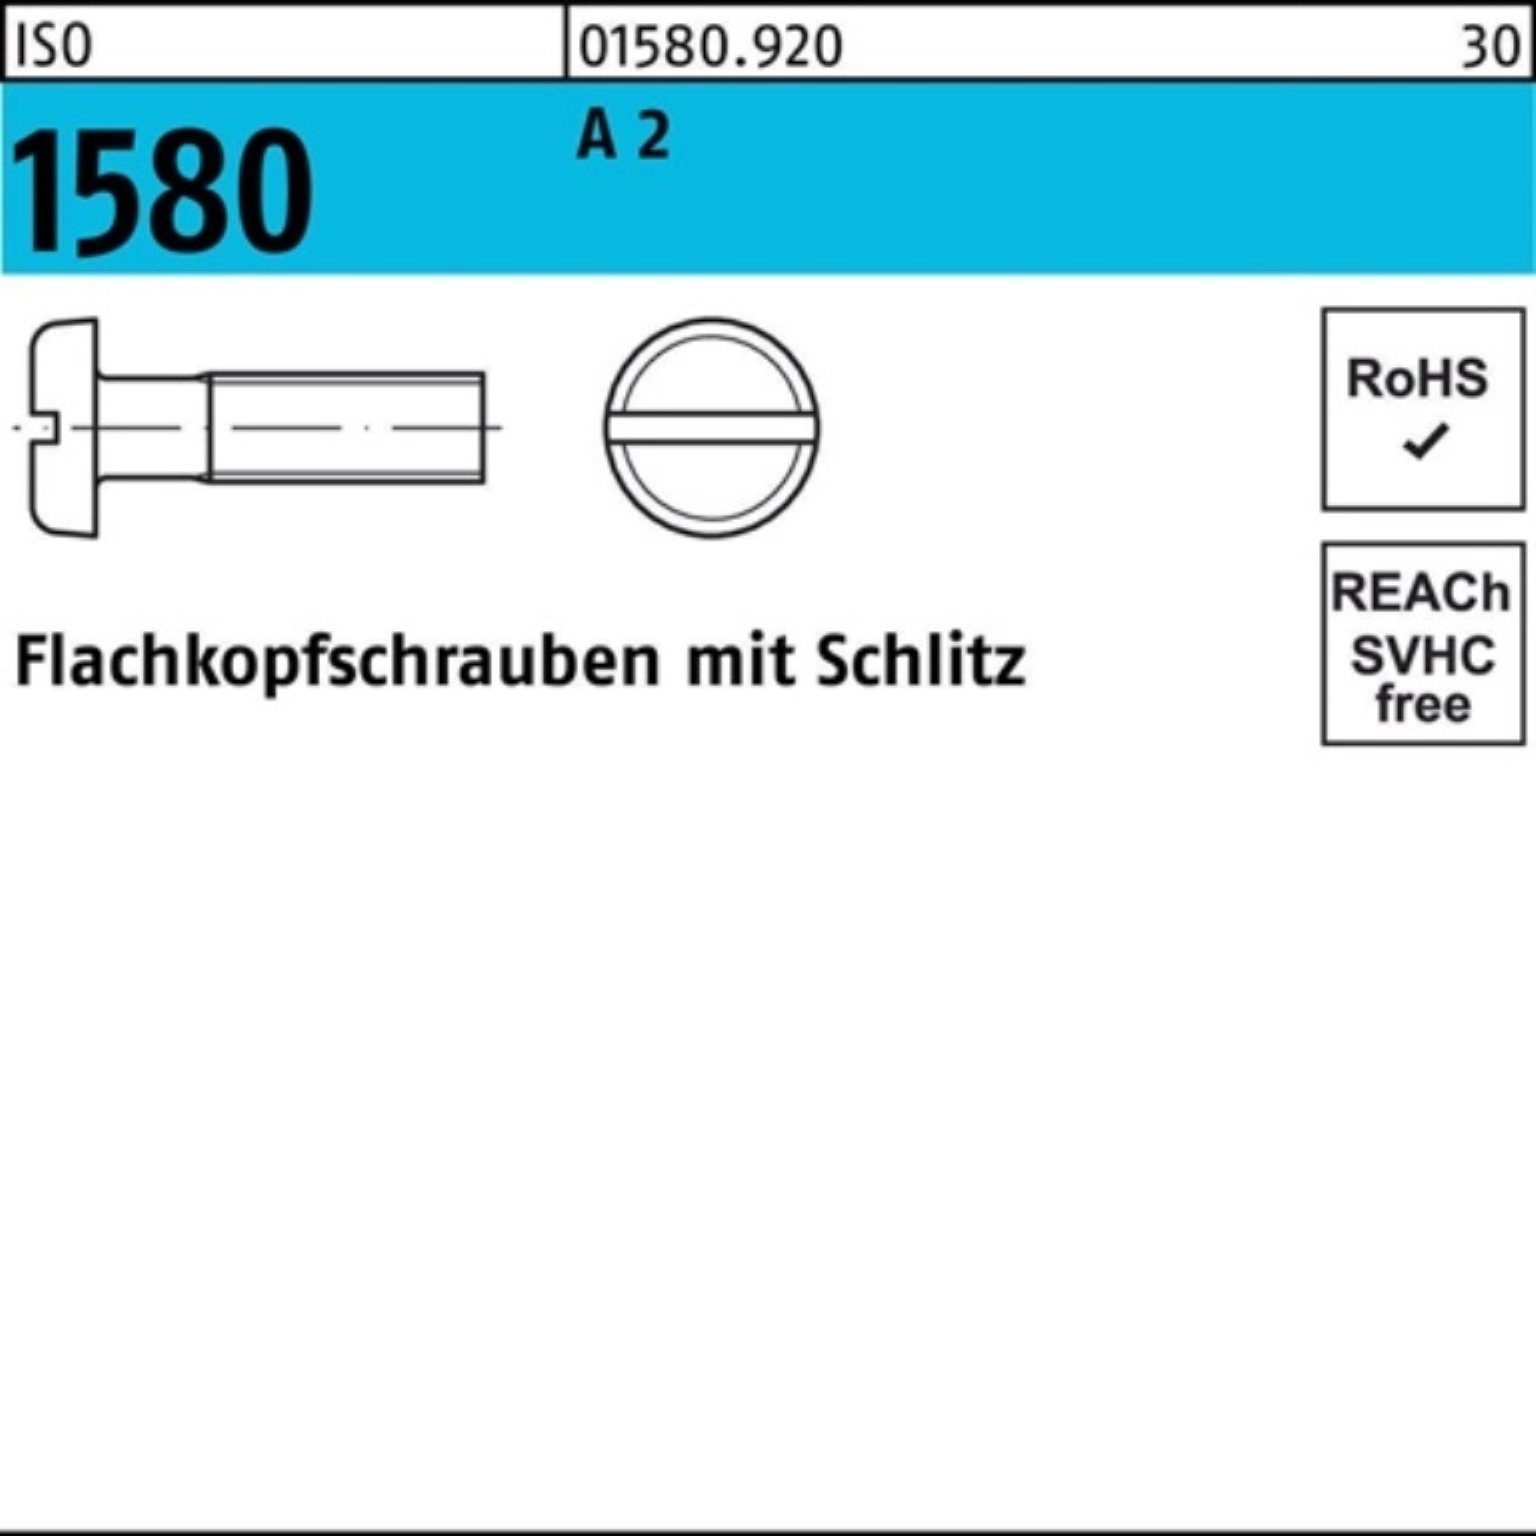 Stück 200er 5 2 A Reyher M4x Flachkopfschraube Pack 200 Schraube Schlitz 1580 ISO ISO